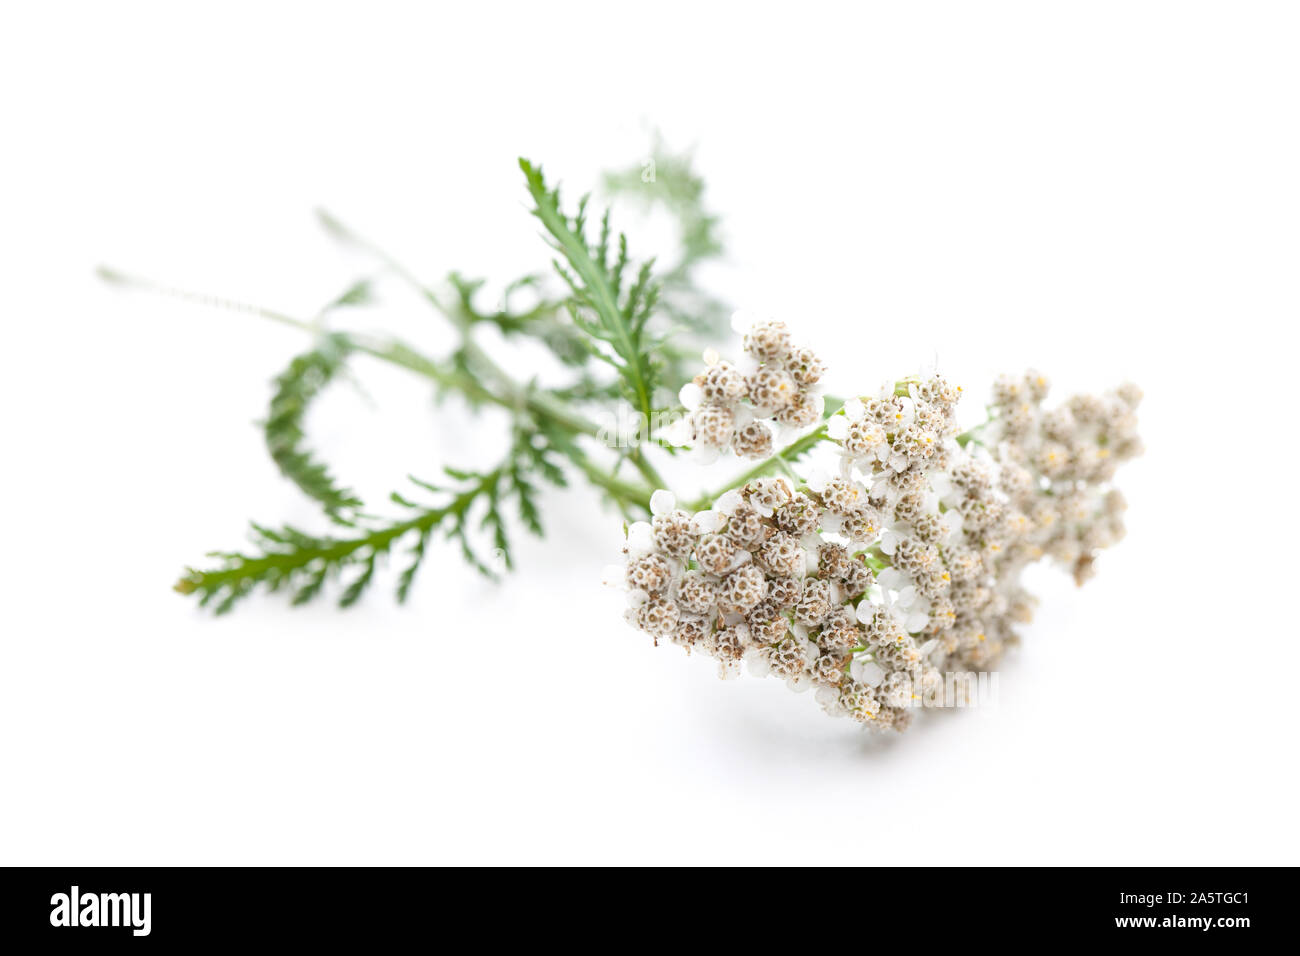 Yarrow (Achillea millefolium) diagonally on white background Stock Photo